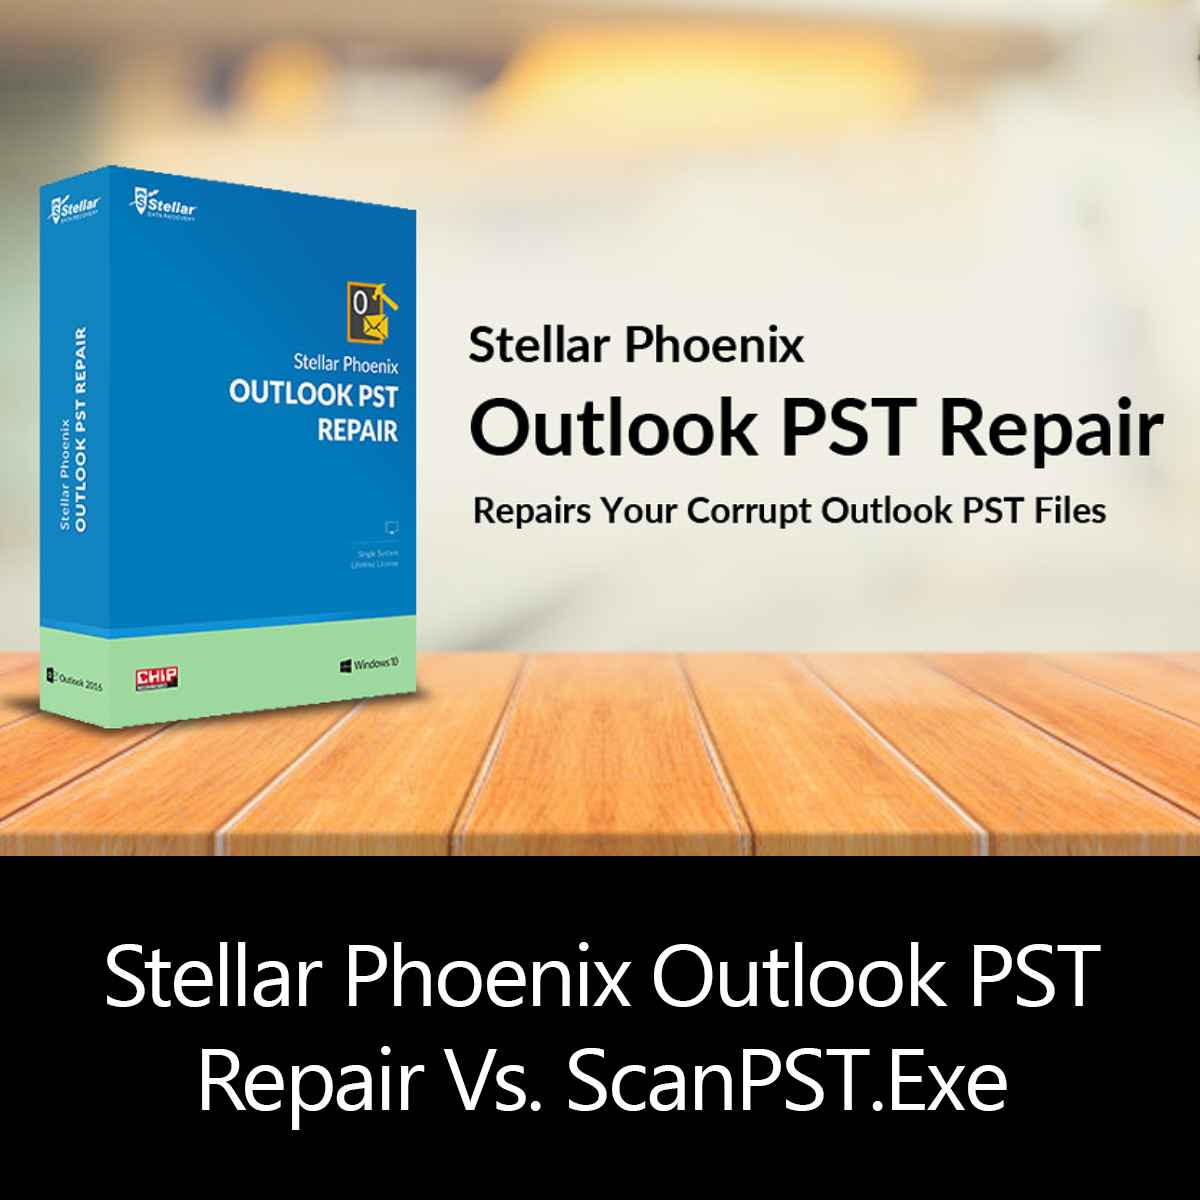 stellar phoenix outlook pst repair tool